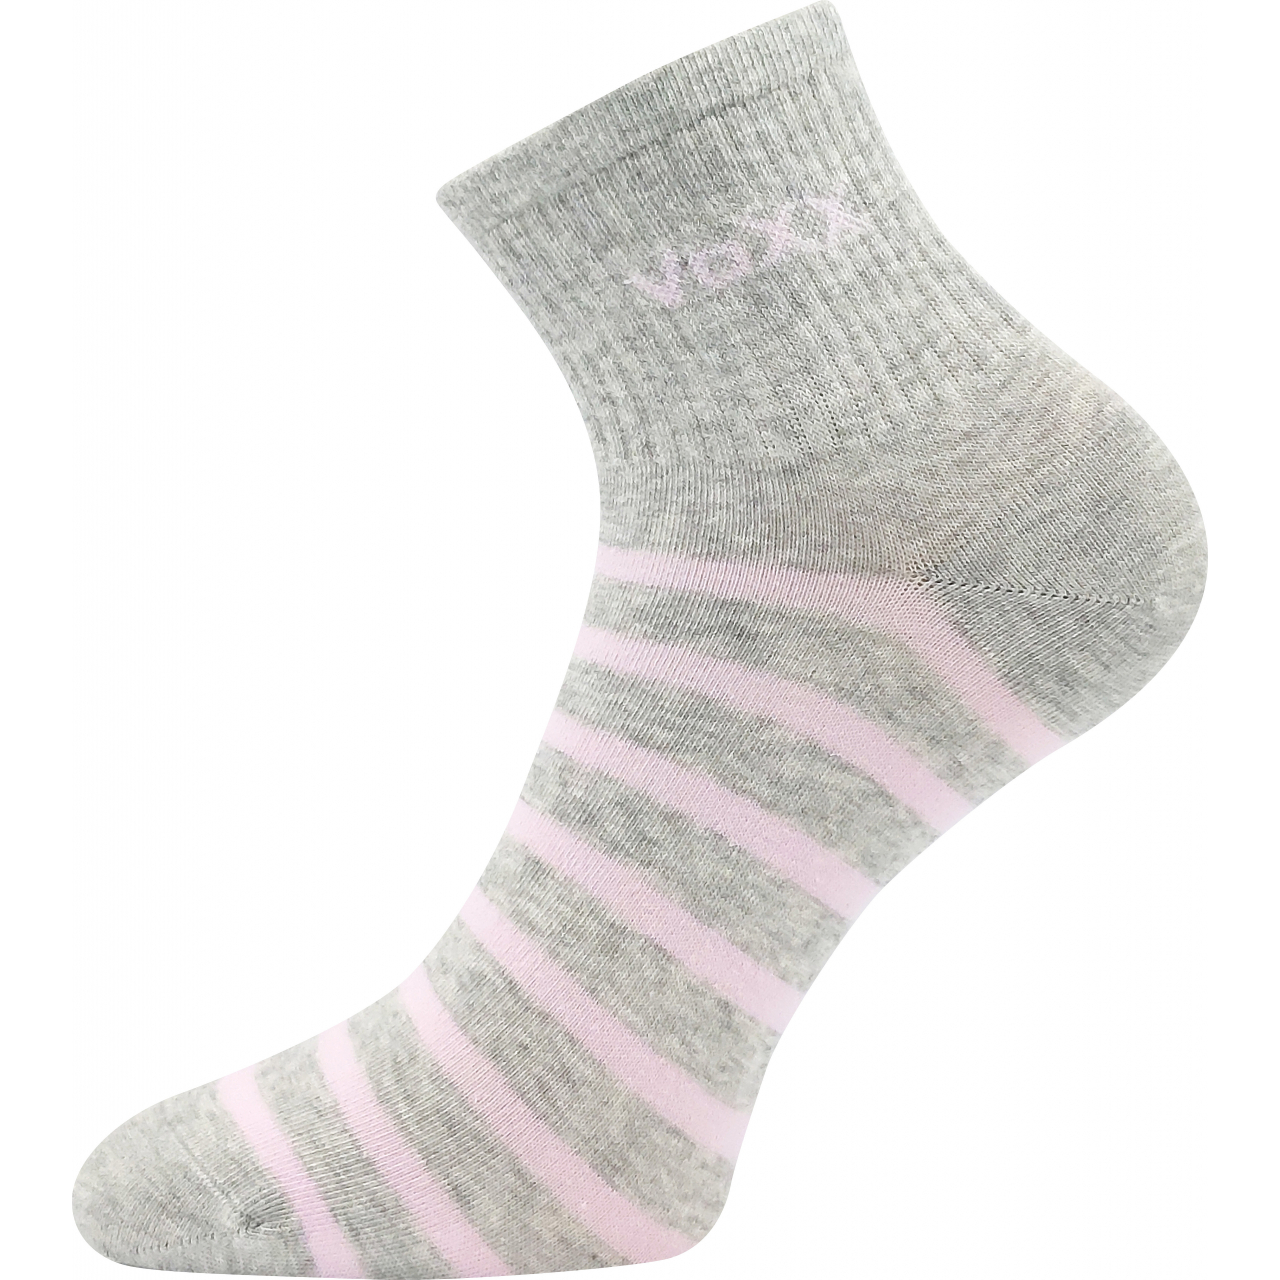 Ponožky dámské klasické Voxx Boxana Pruhy - světle šedé-růžové, 39-42